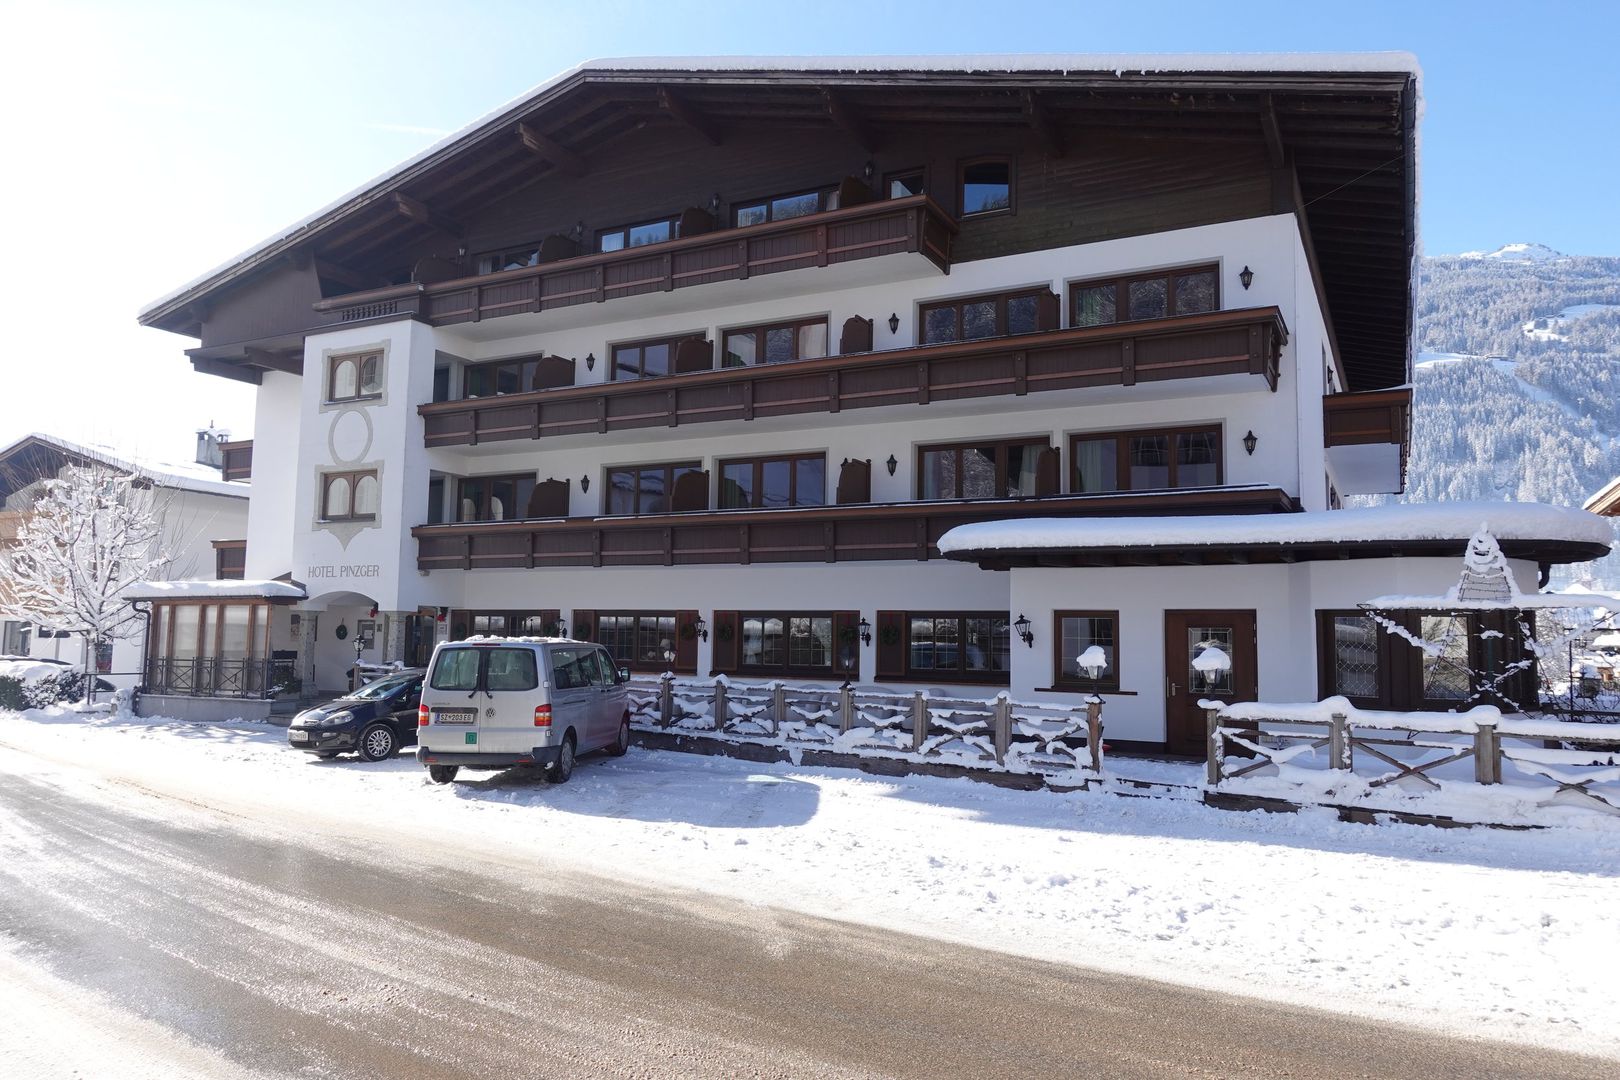 Hotel zum Pinzger in Kaltenbach - Ried - Stumm, Hotel zum Pinzger / Österreich